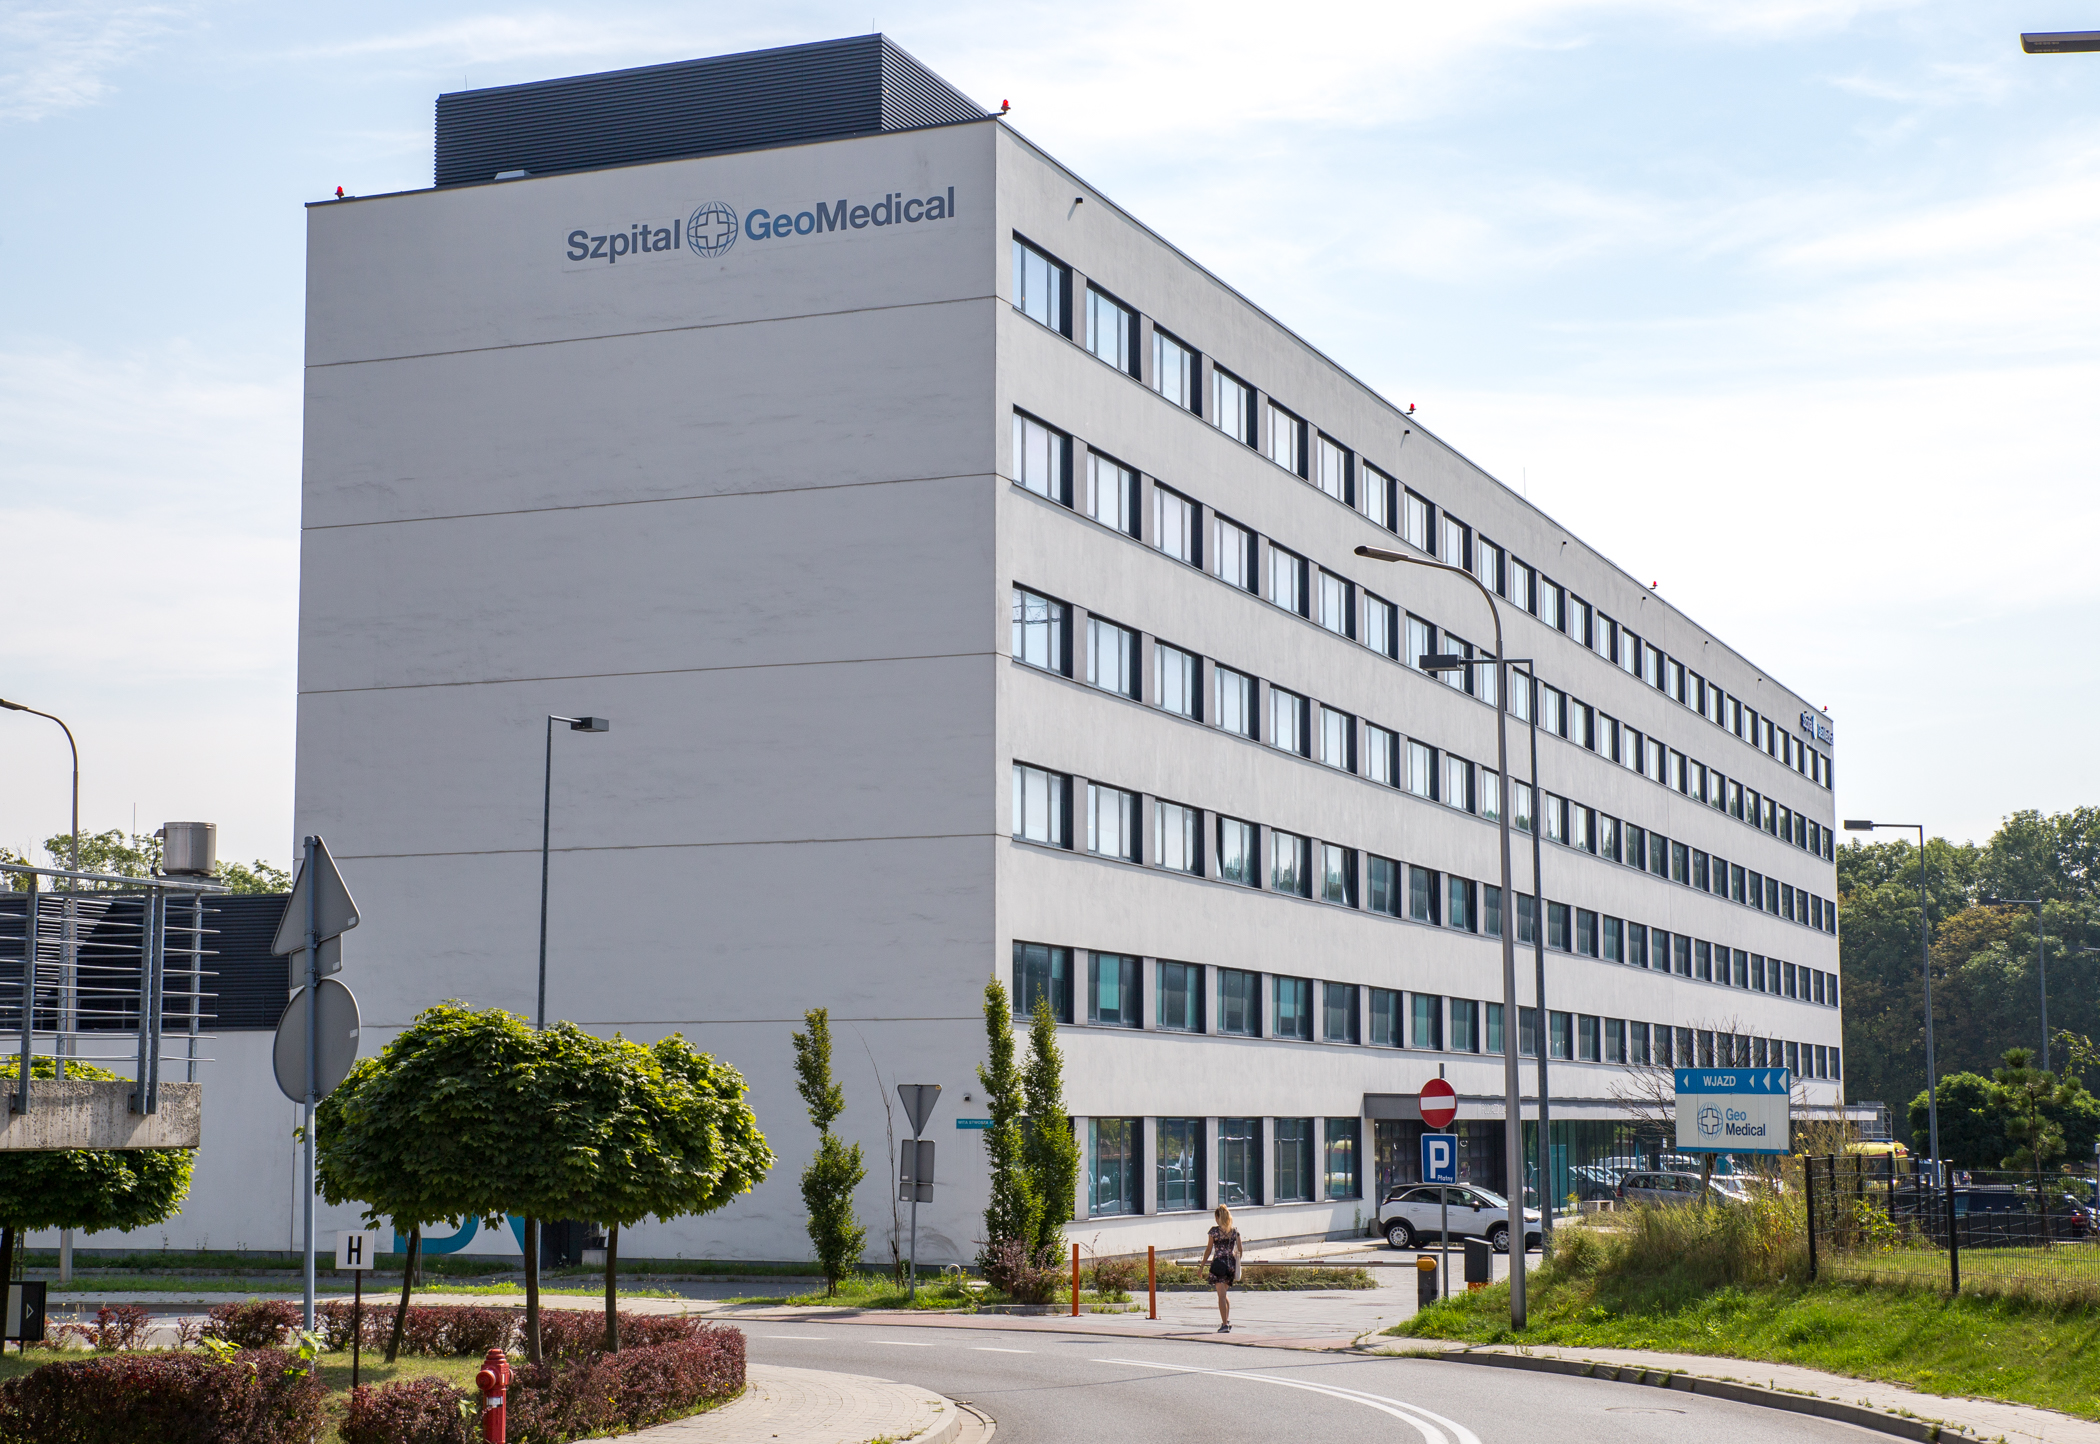 Katowice za pomocą rządowych środków przejmują szpital GeoMedical